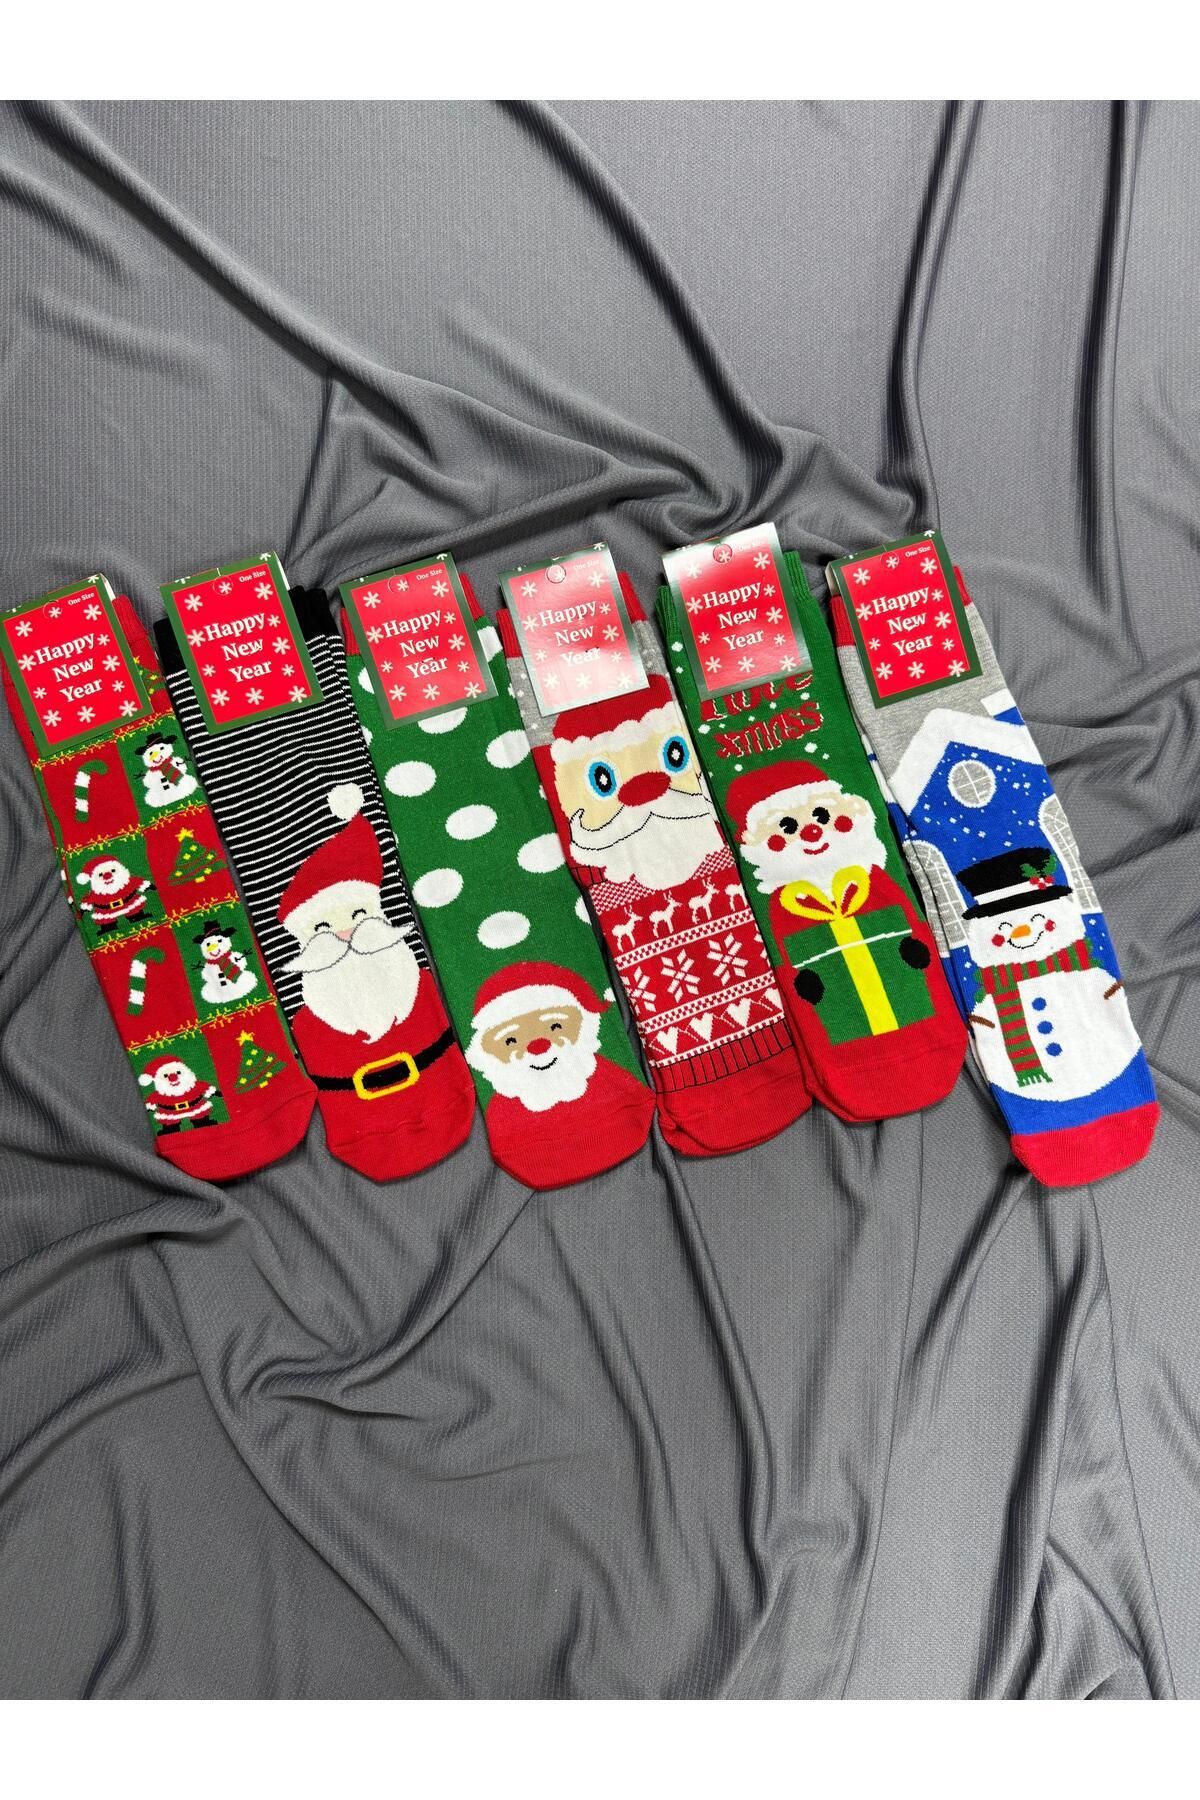 KRC & GLOBAL TEKSTİL Yılbaşı - Noel - Christmas Temalı Unisex Çorapları 6'lı